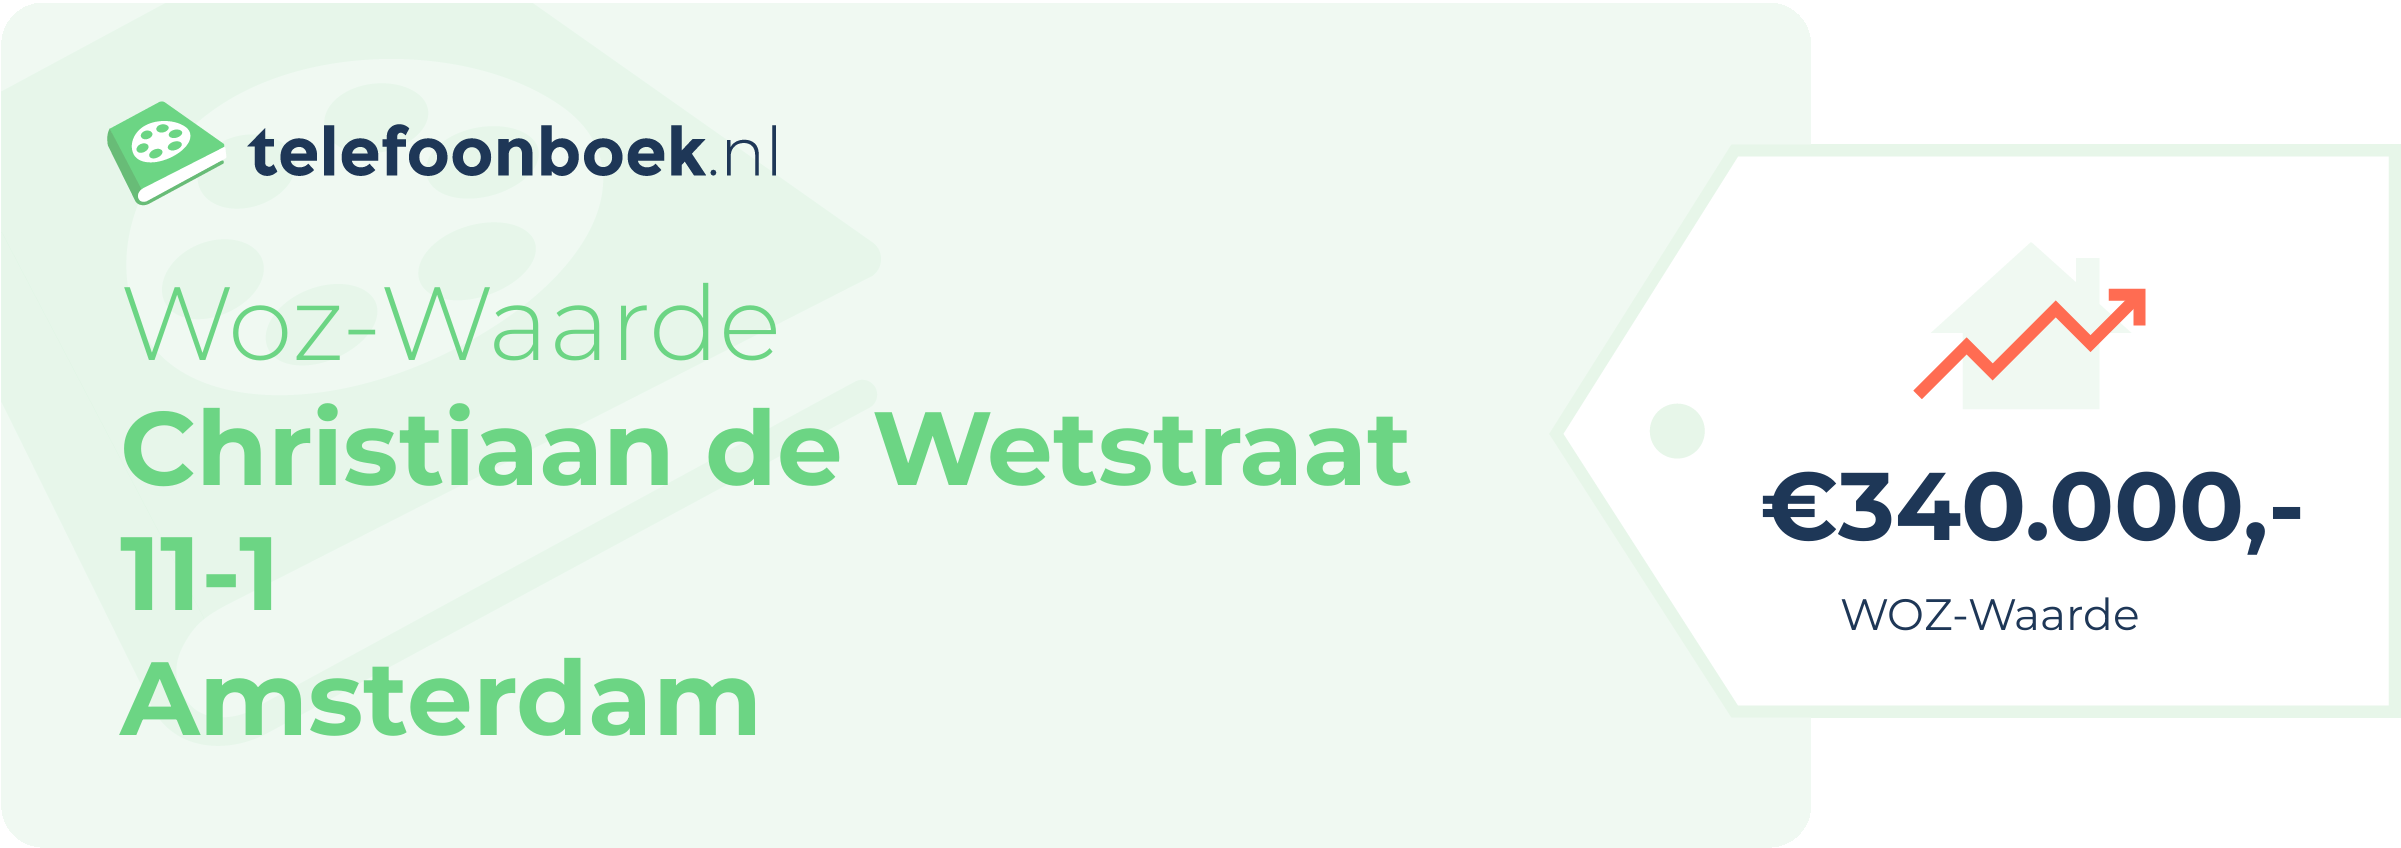 WOZ-waarde Christiaan De Wetstraat 11-1 Amsterdam